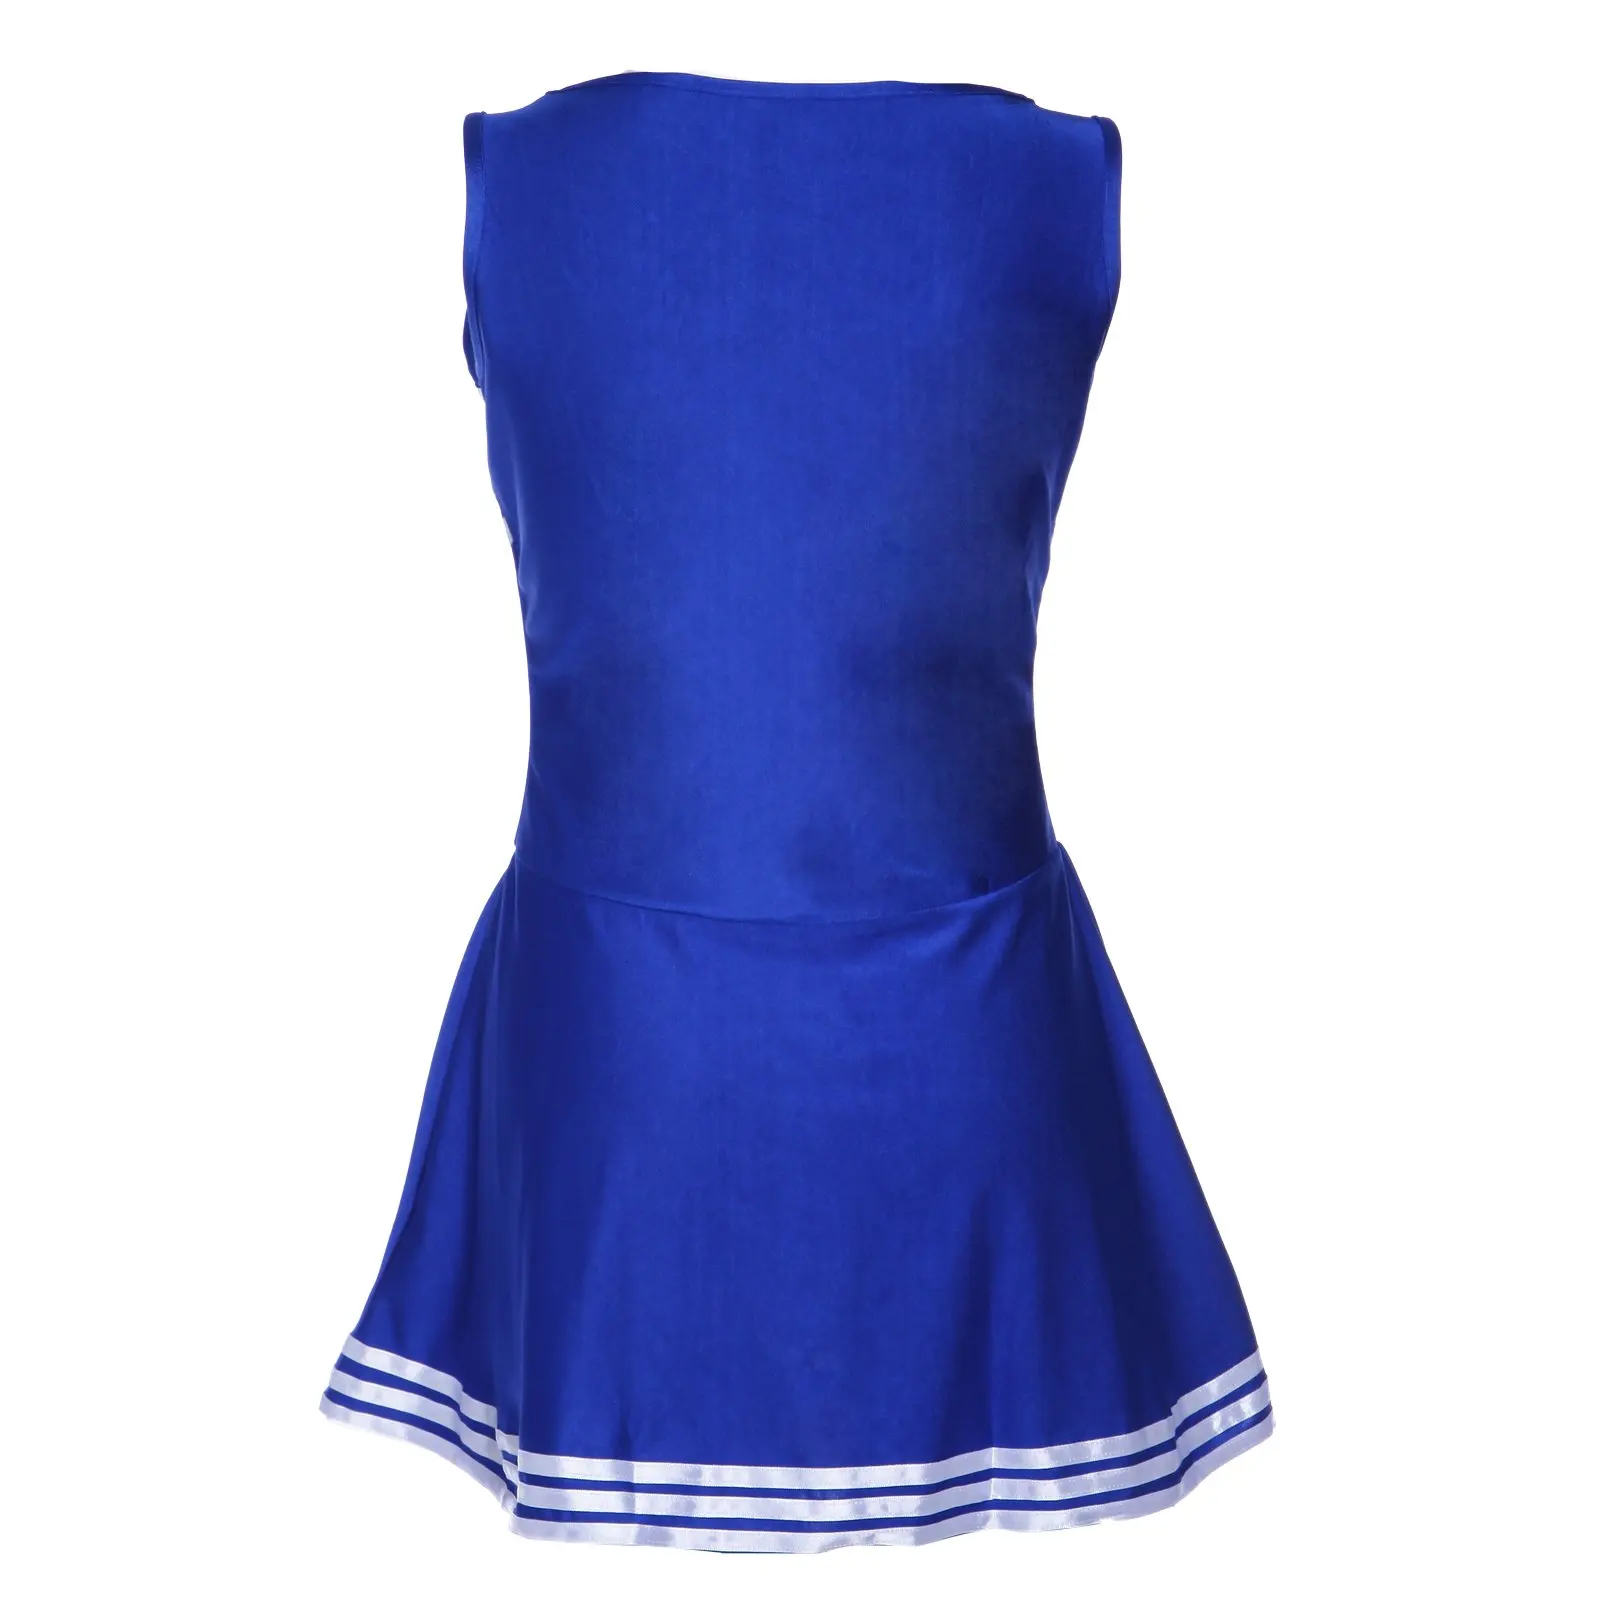 SZ-lgfm-платье на бретелях голубое нарядное платье помпон для чирлидинга pom girl party girl XS 14-16 Футбольная Школа